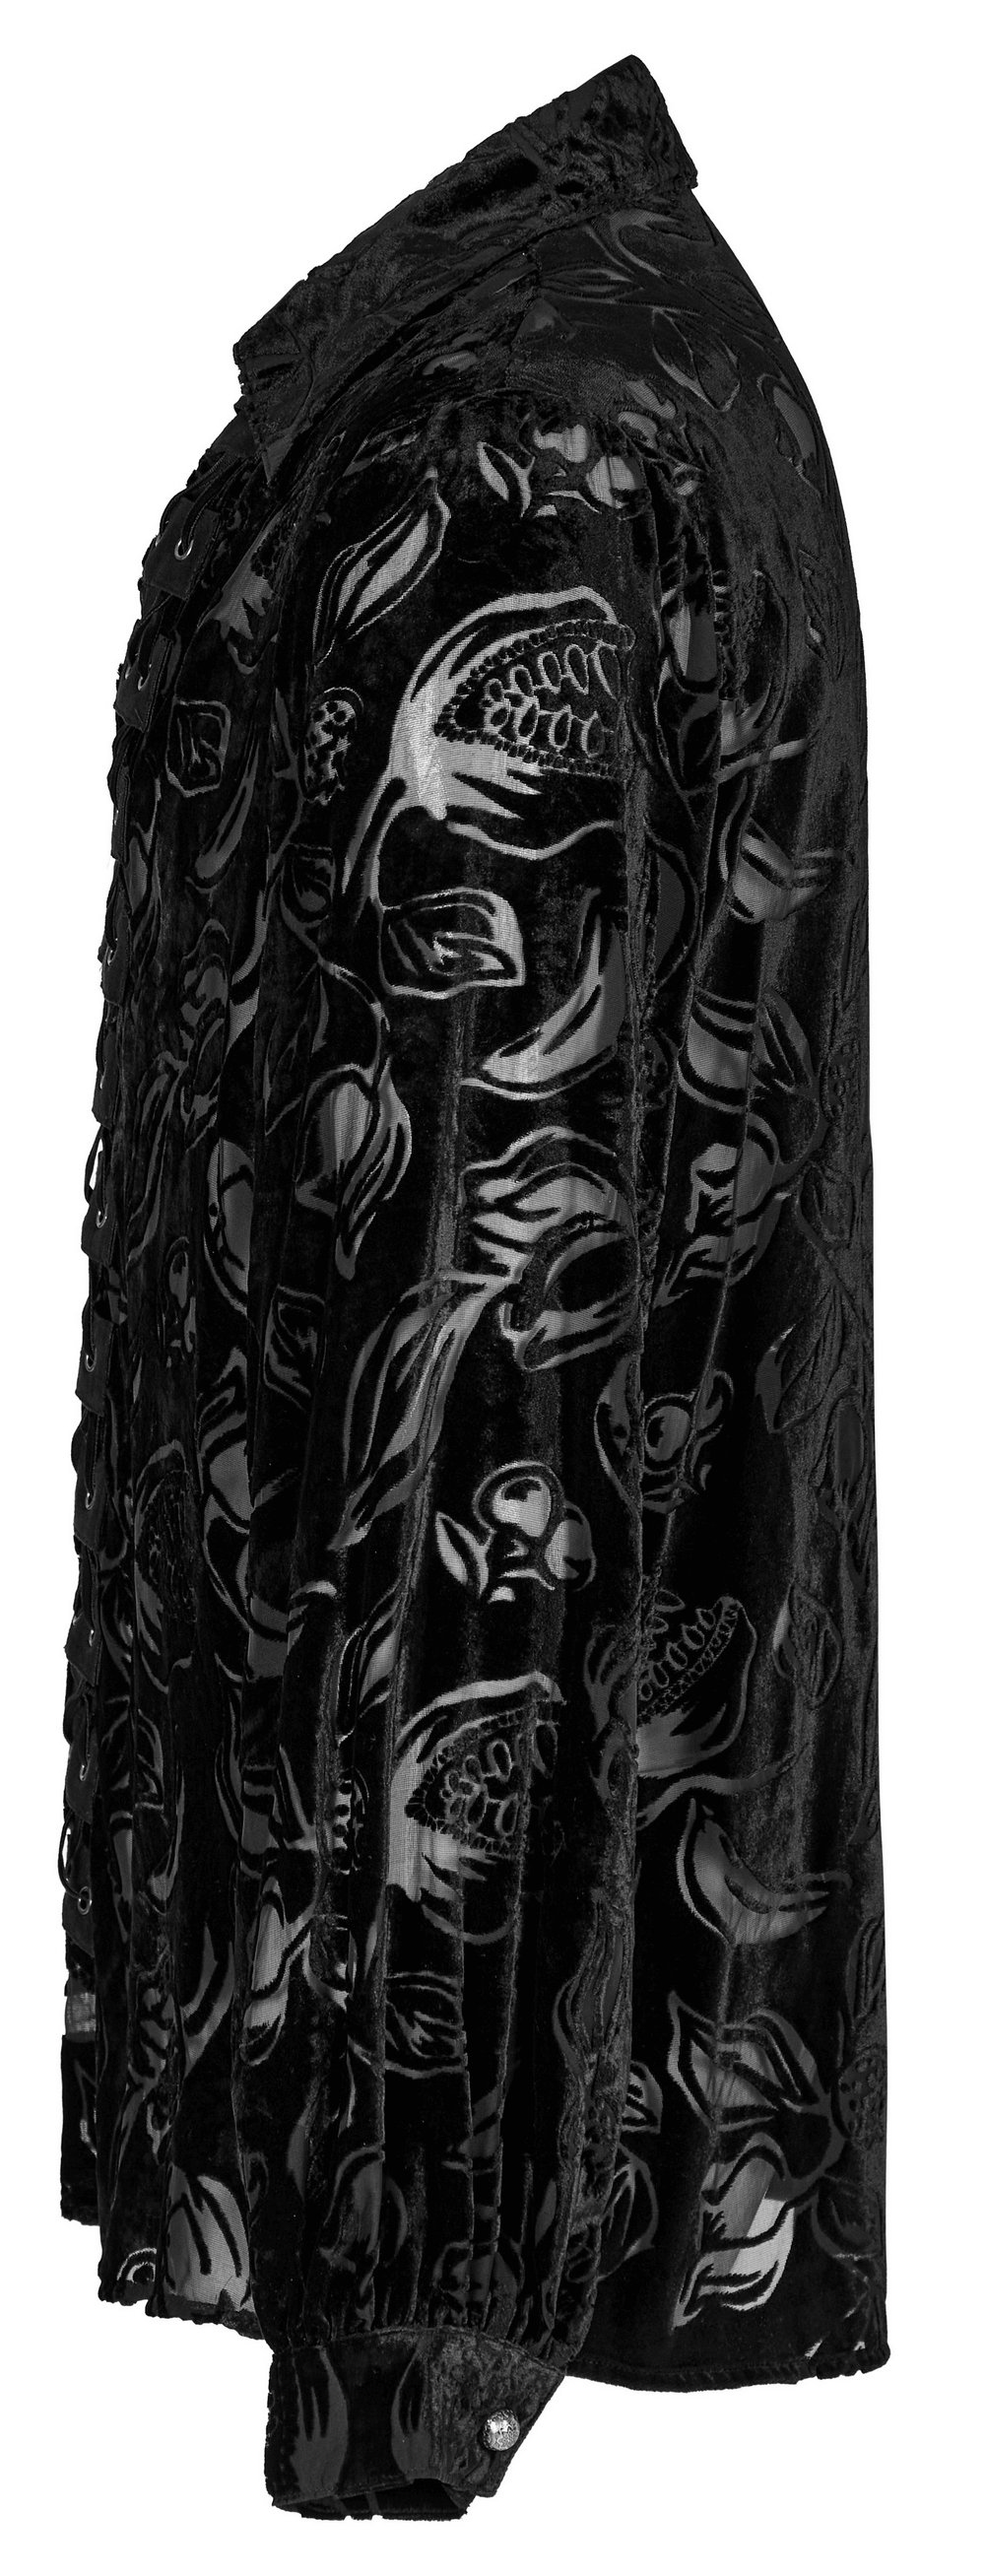 Velvet Flocked Piranha Gothic Shirt for Men - HARD'N'HEAVY